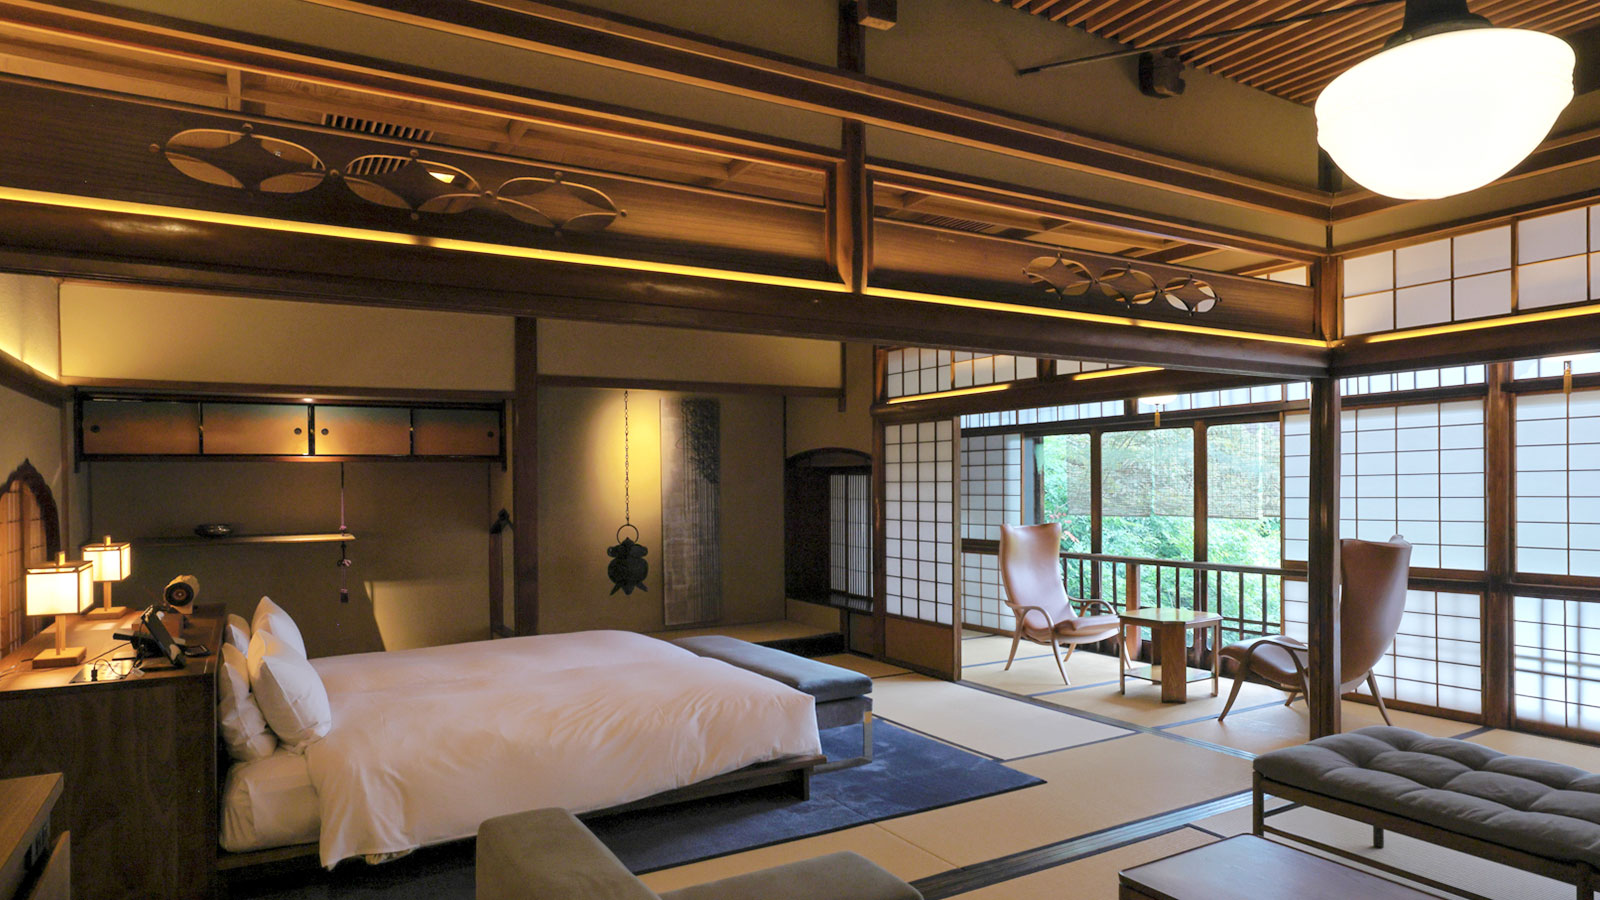 築100余年の数寄屋建築に泊まれる、京都・祇園のスモールラグジュアリーホテル「SOWAKA(そわか)」